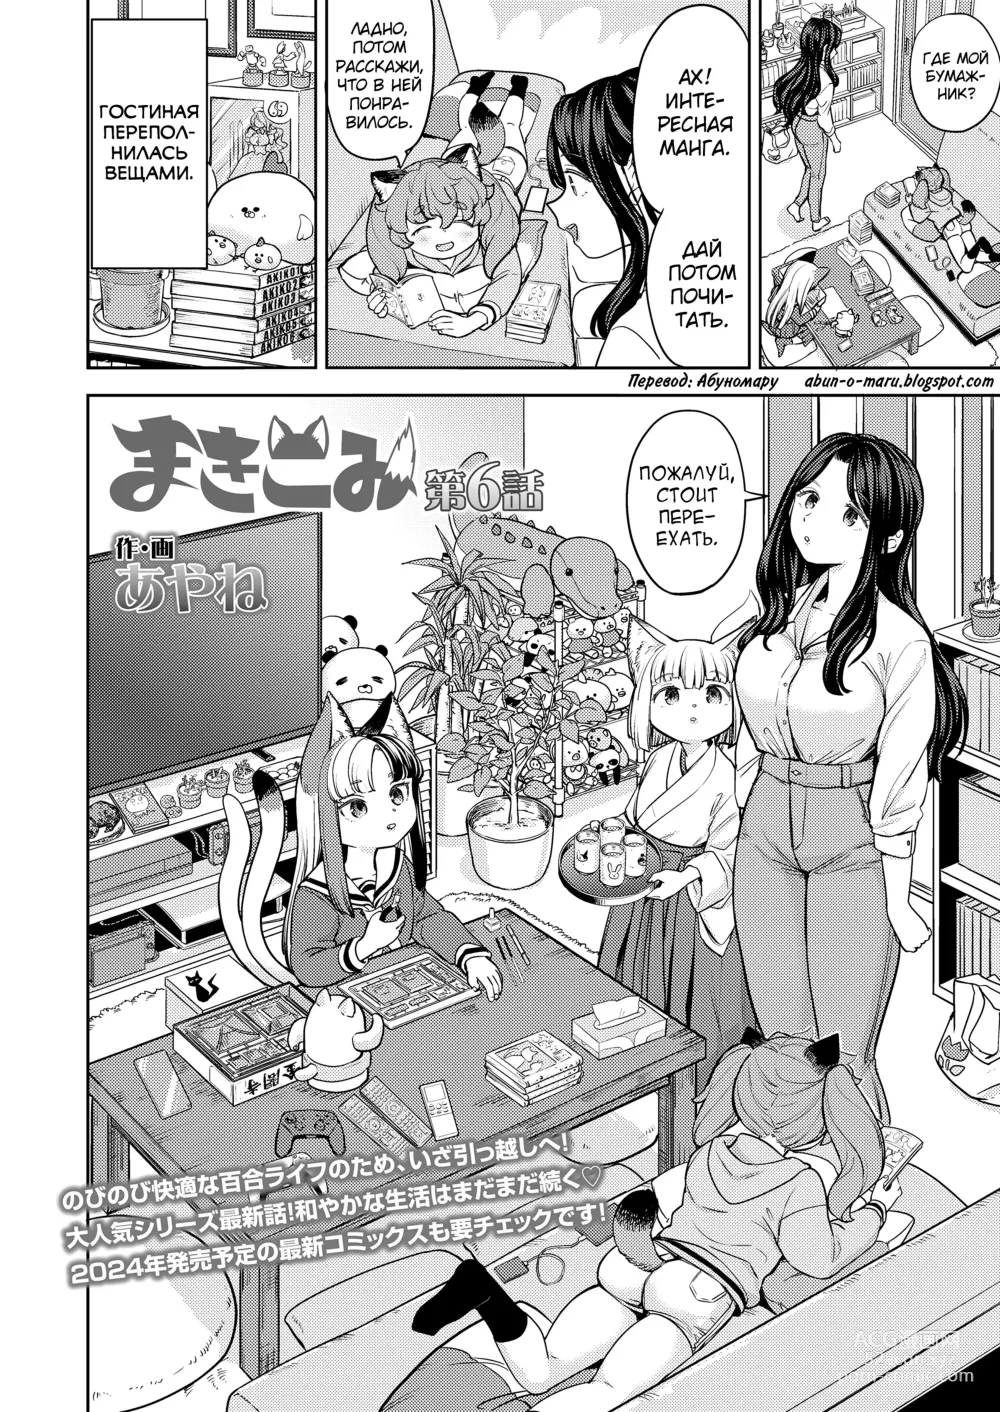 Page 2 of manga Makikomi 6